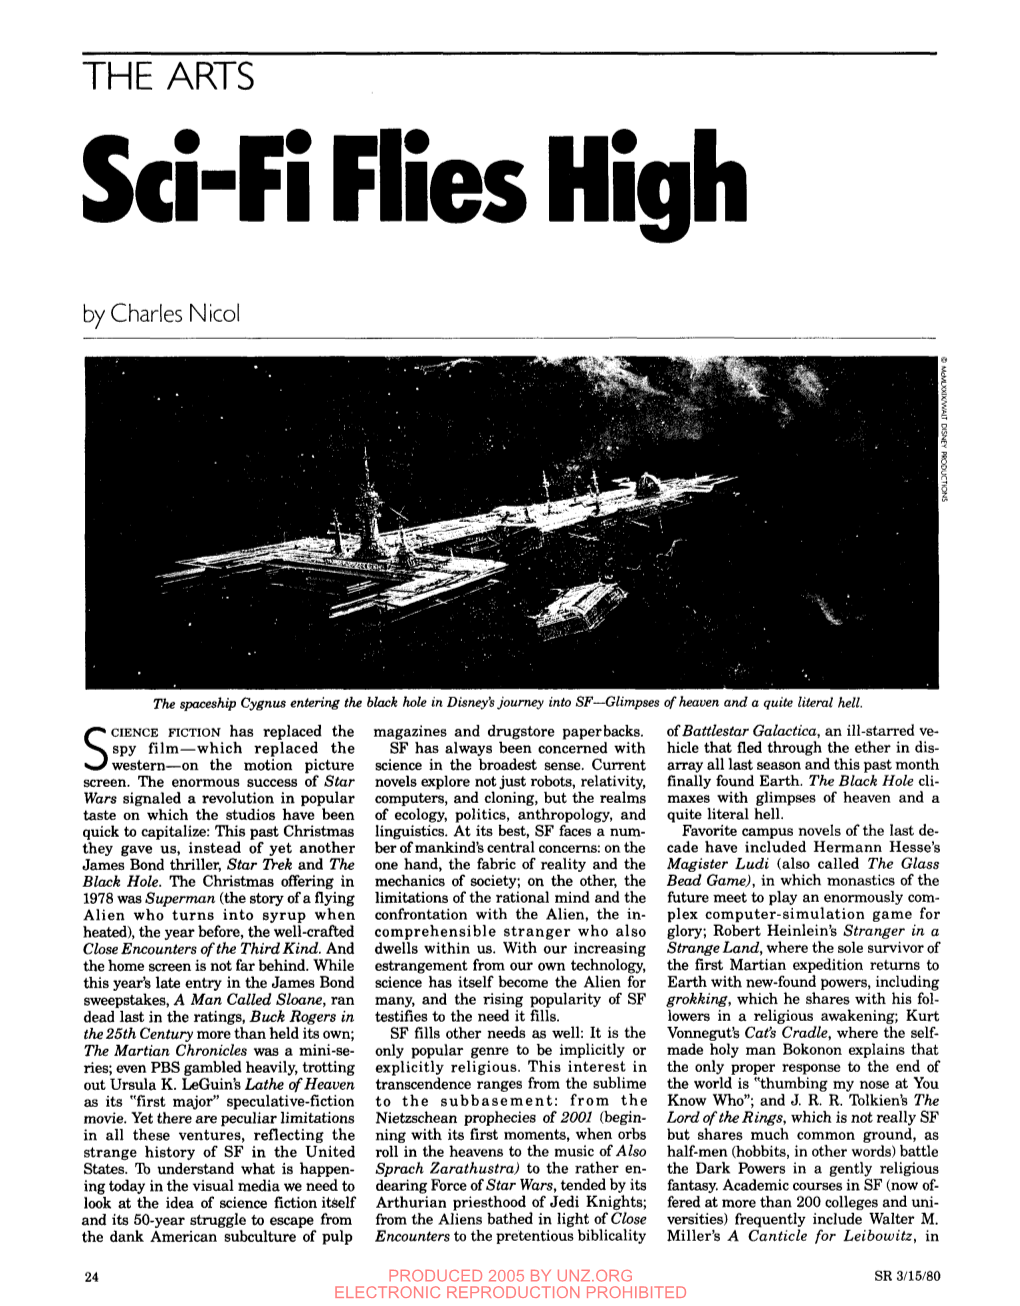 Sd-Fi Flies High by Charles Nicol